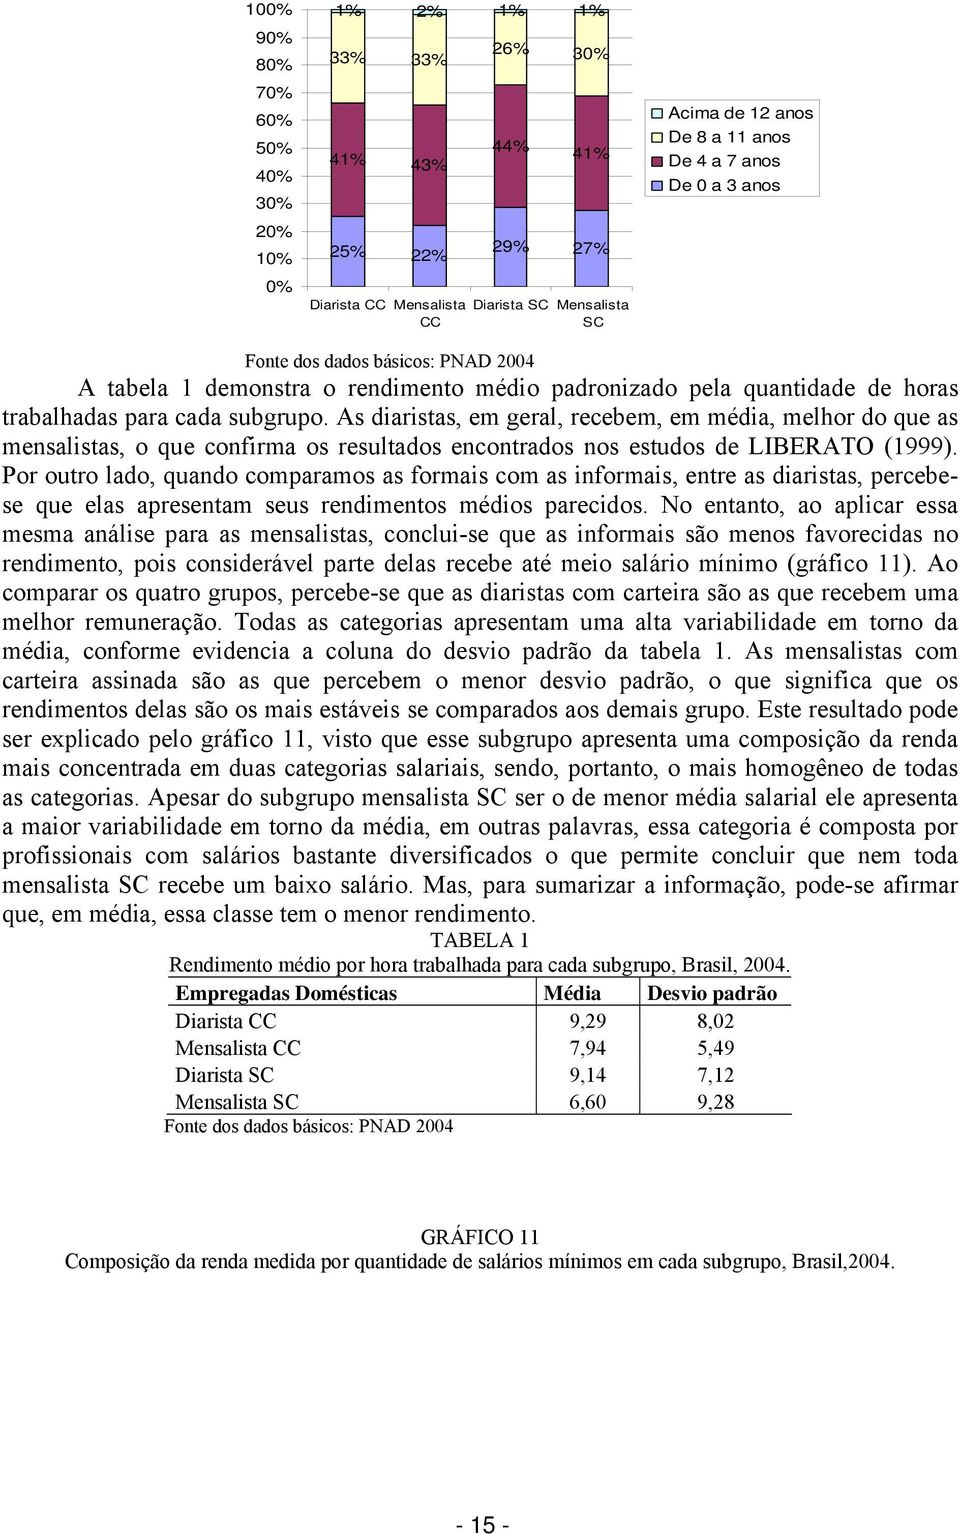 As diaristas, em geral, recebem, em média, melhor do que as mensalistas, o que confirma os resultados encontrados nos estudos de LIBERATO (1999).